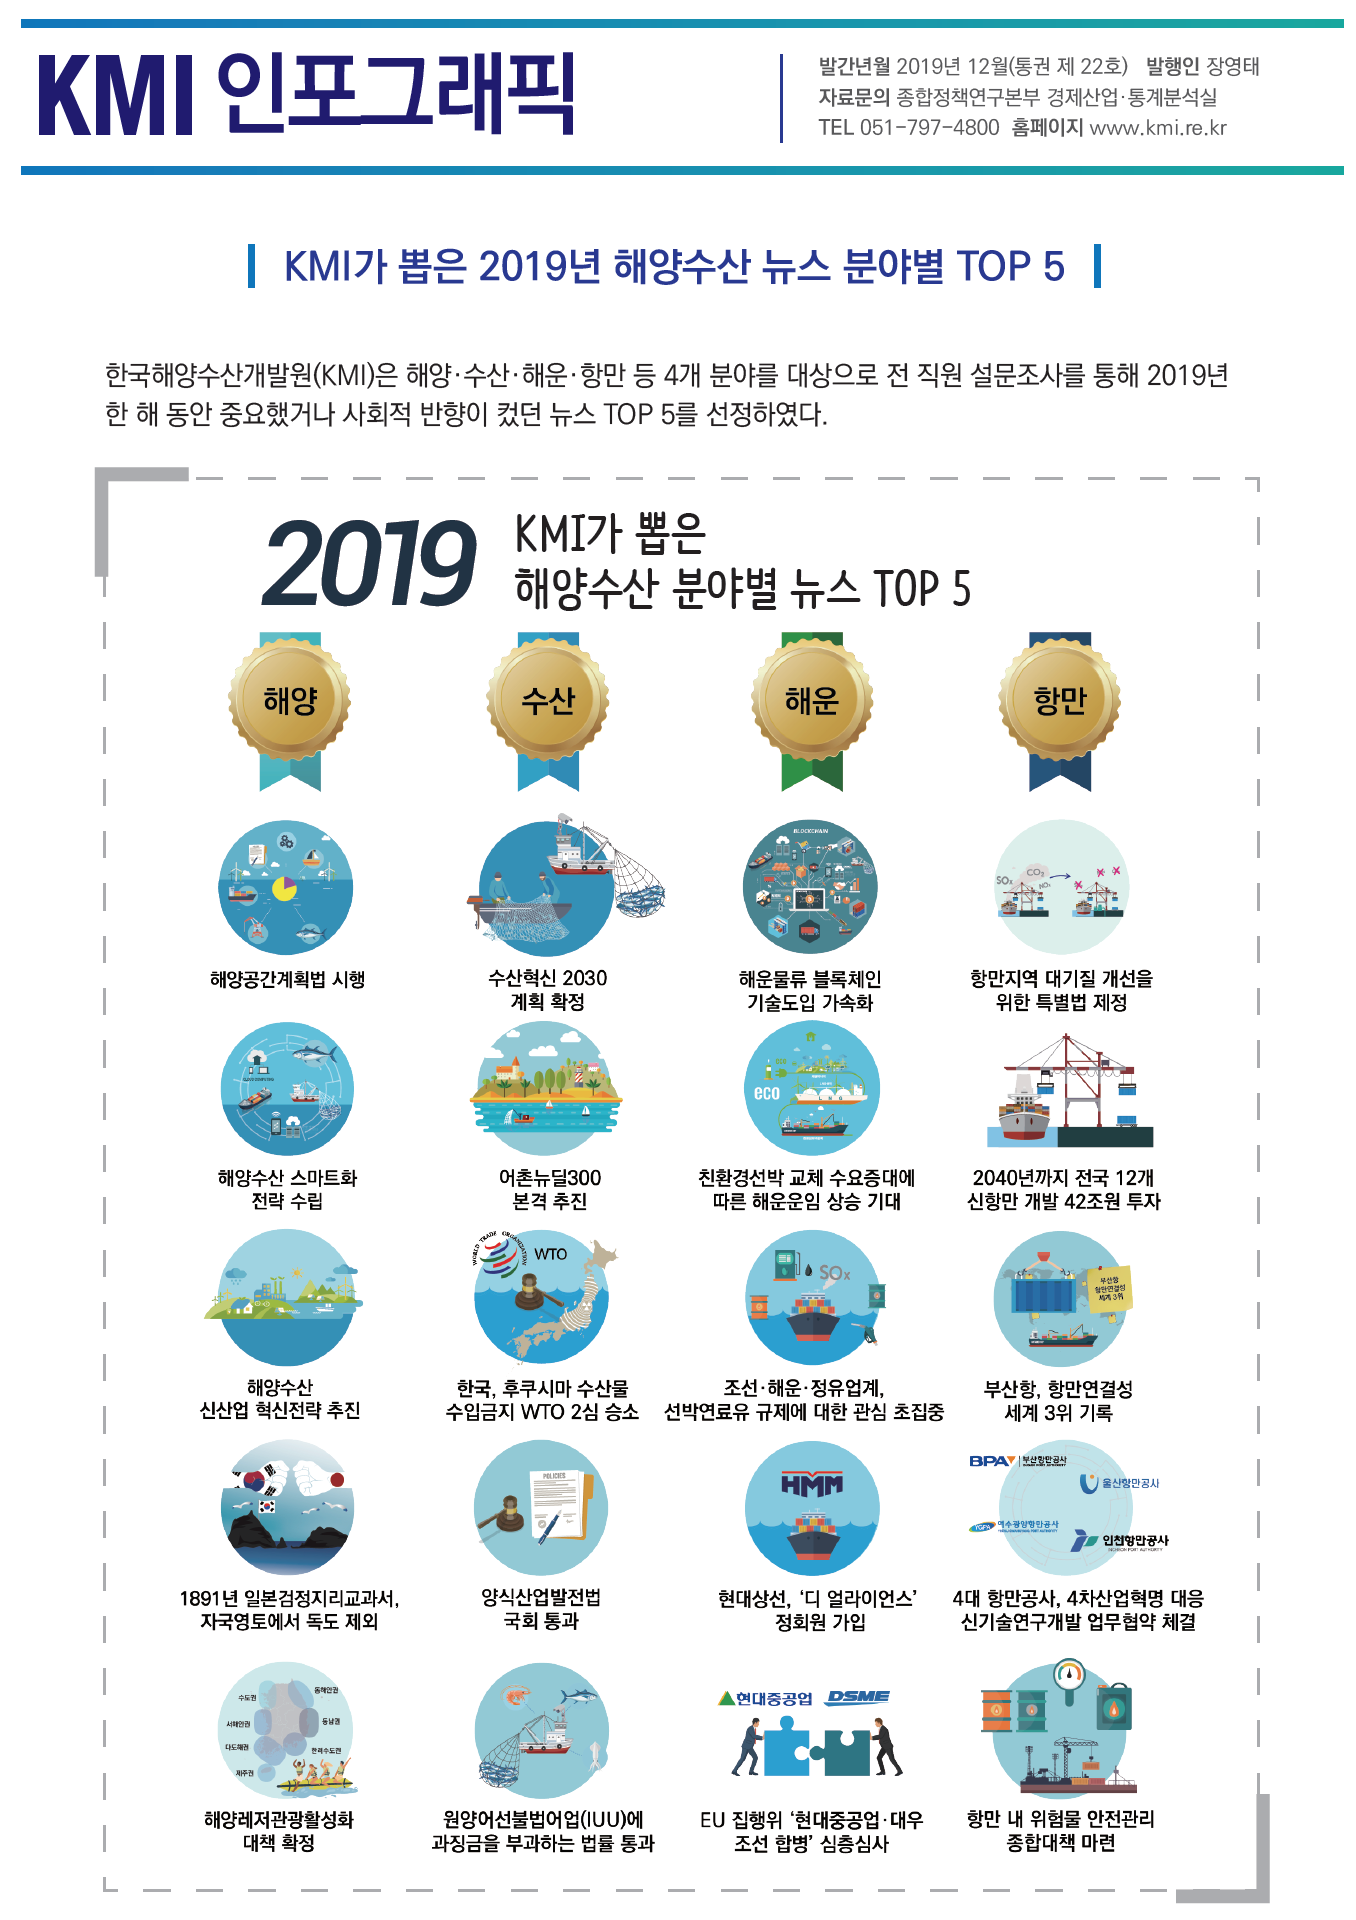 통권 제22호(2019 해양수산 분야별 TOP5 뉴스) 표지